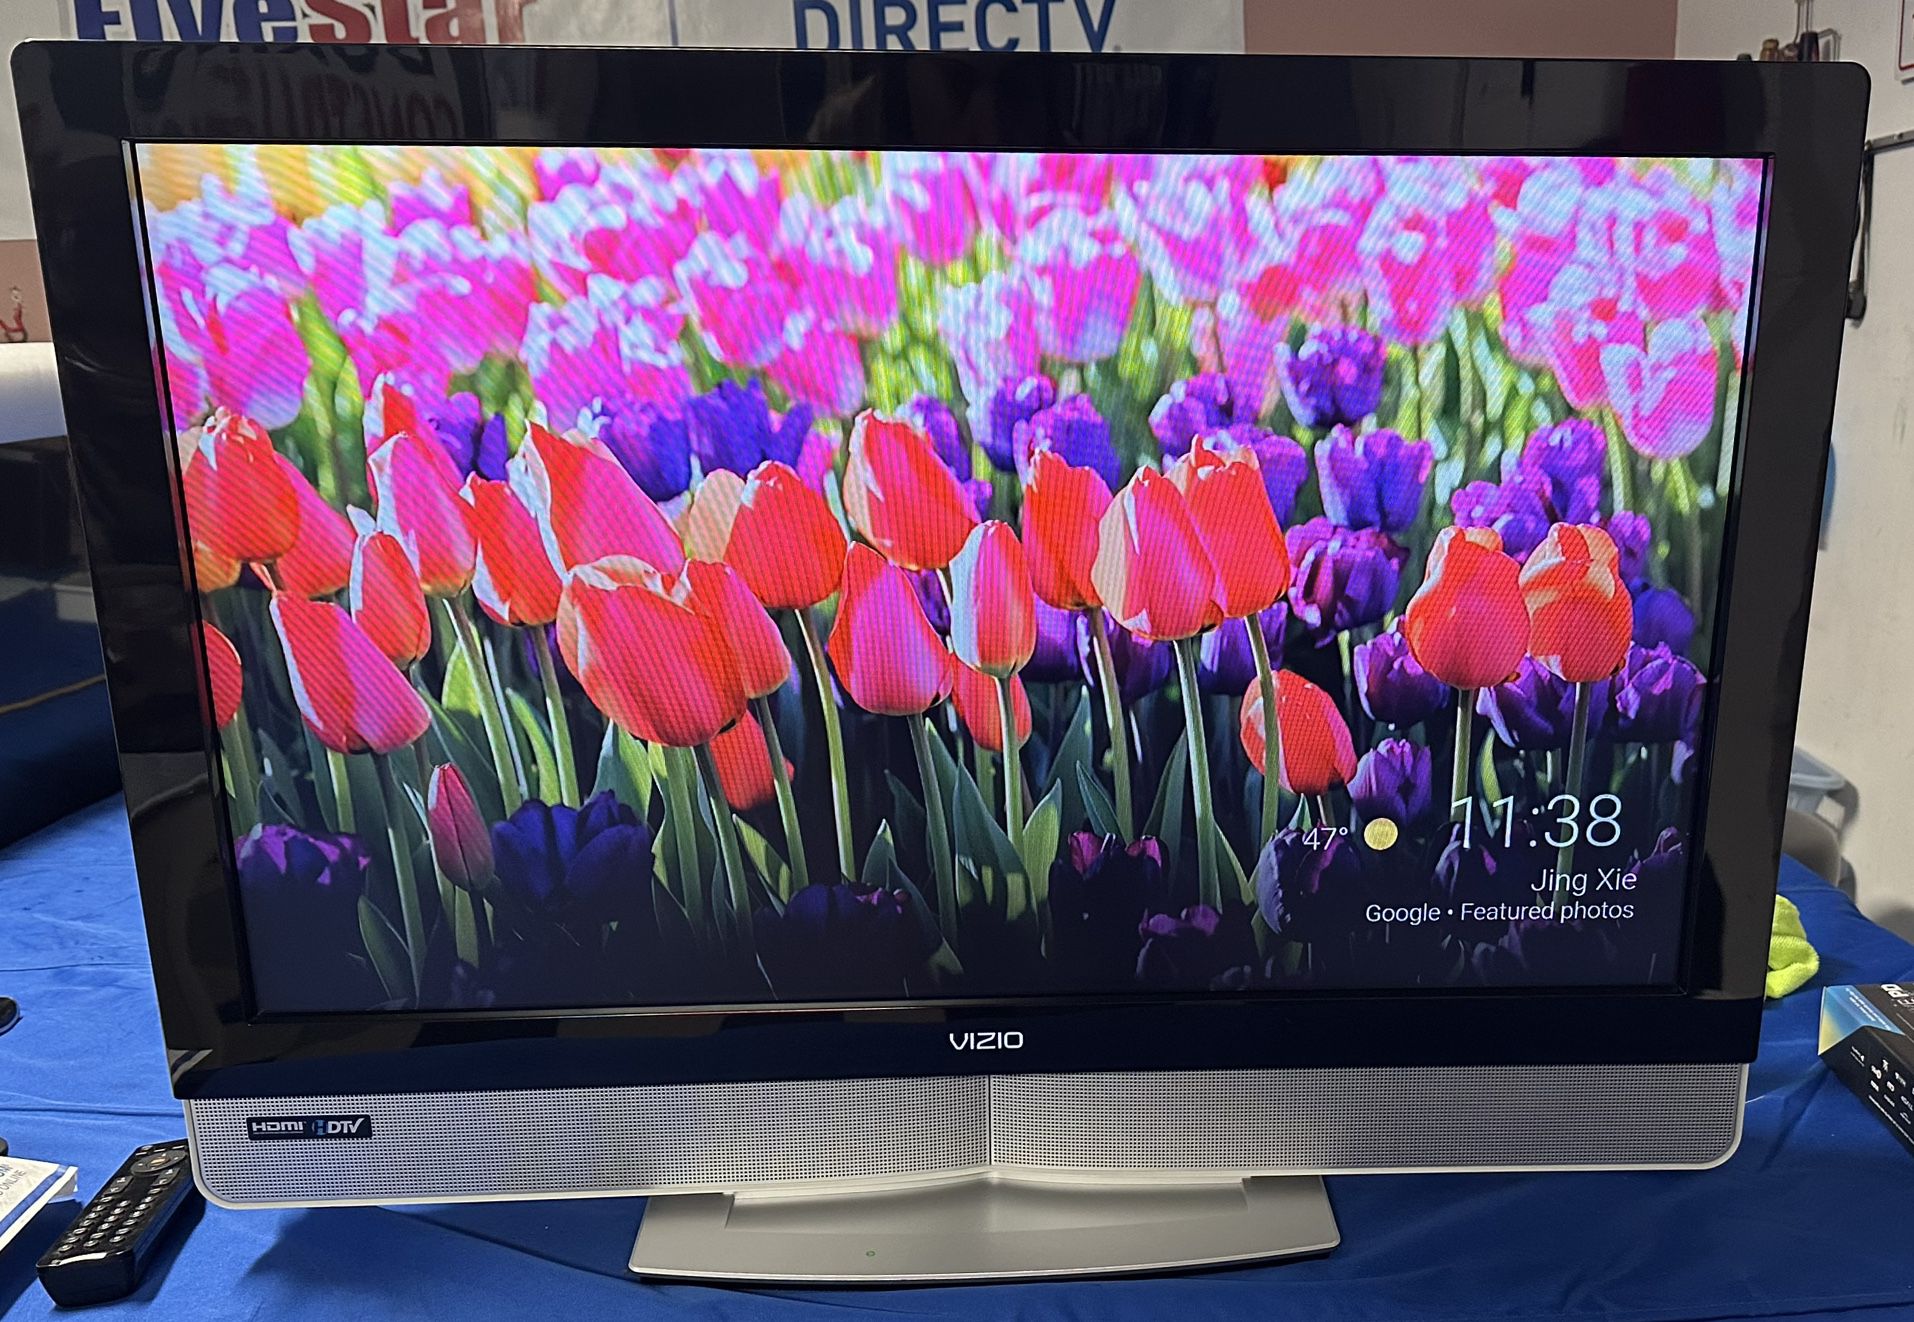 Vizio 37" inch LCD 1080p HDTV - White